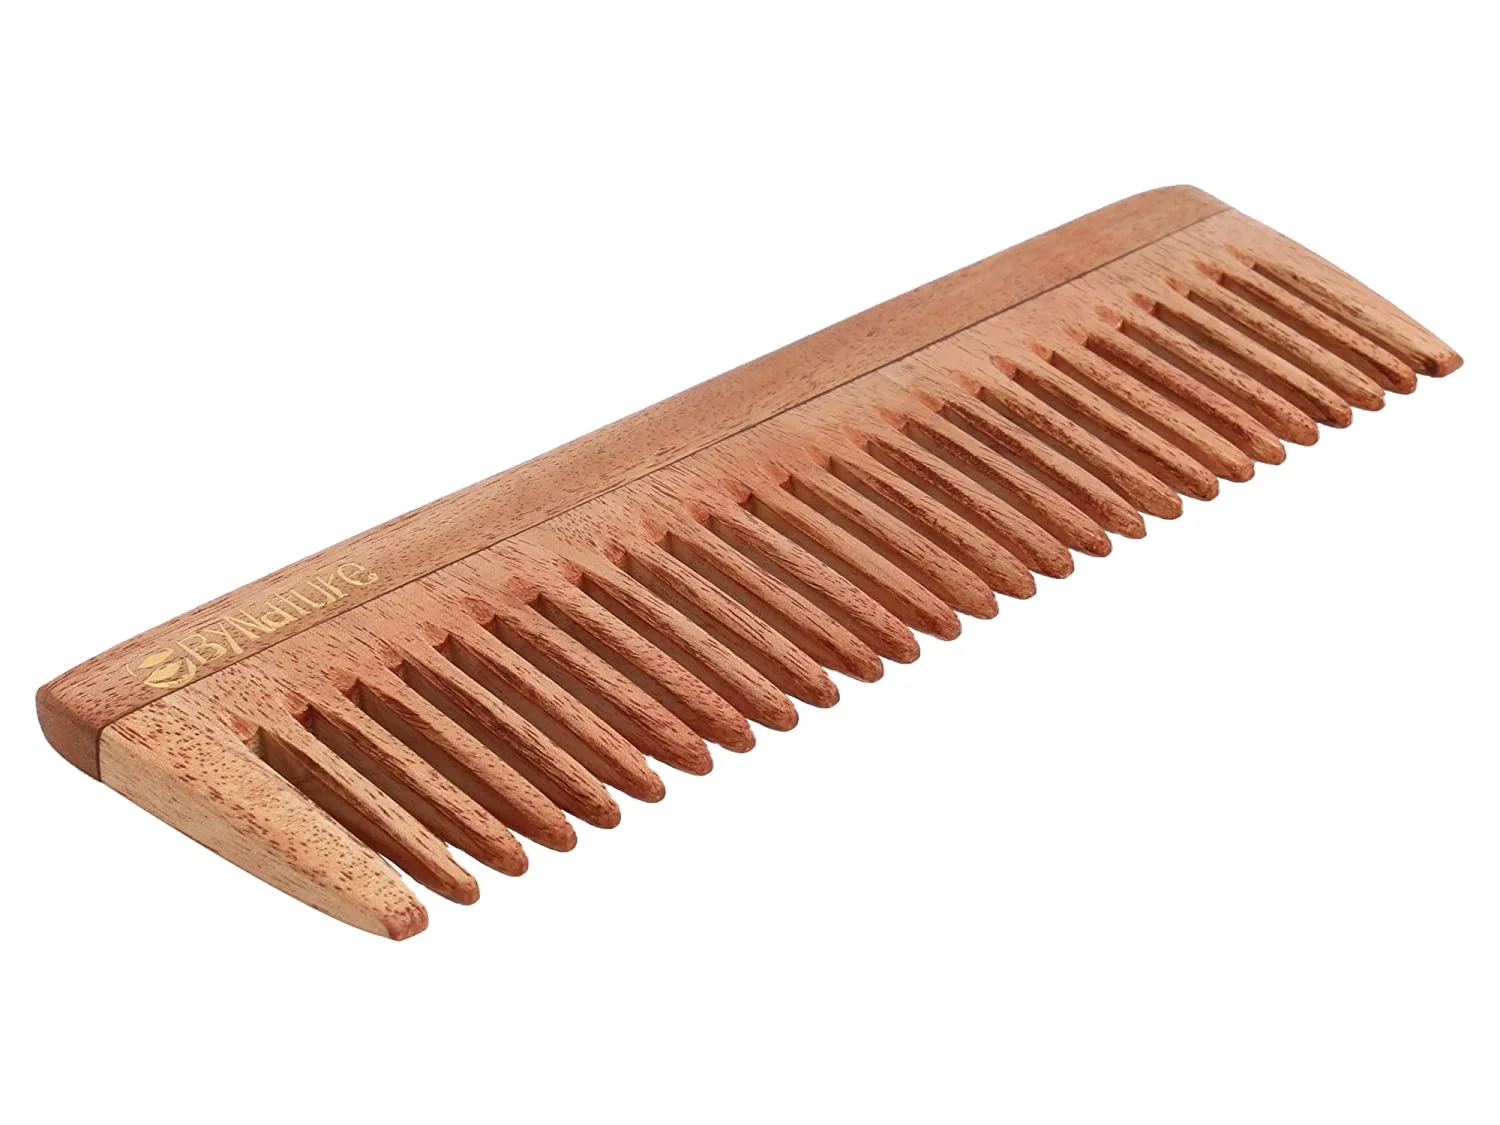 100 гребень. Wood Comb 29.5x25.6. Neem Comb. Расчетса made Spain. Wood Comb.